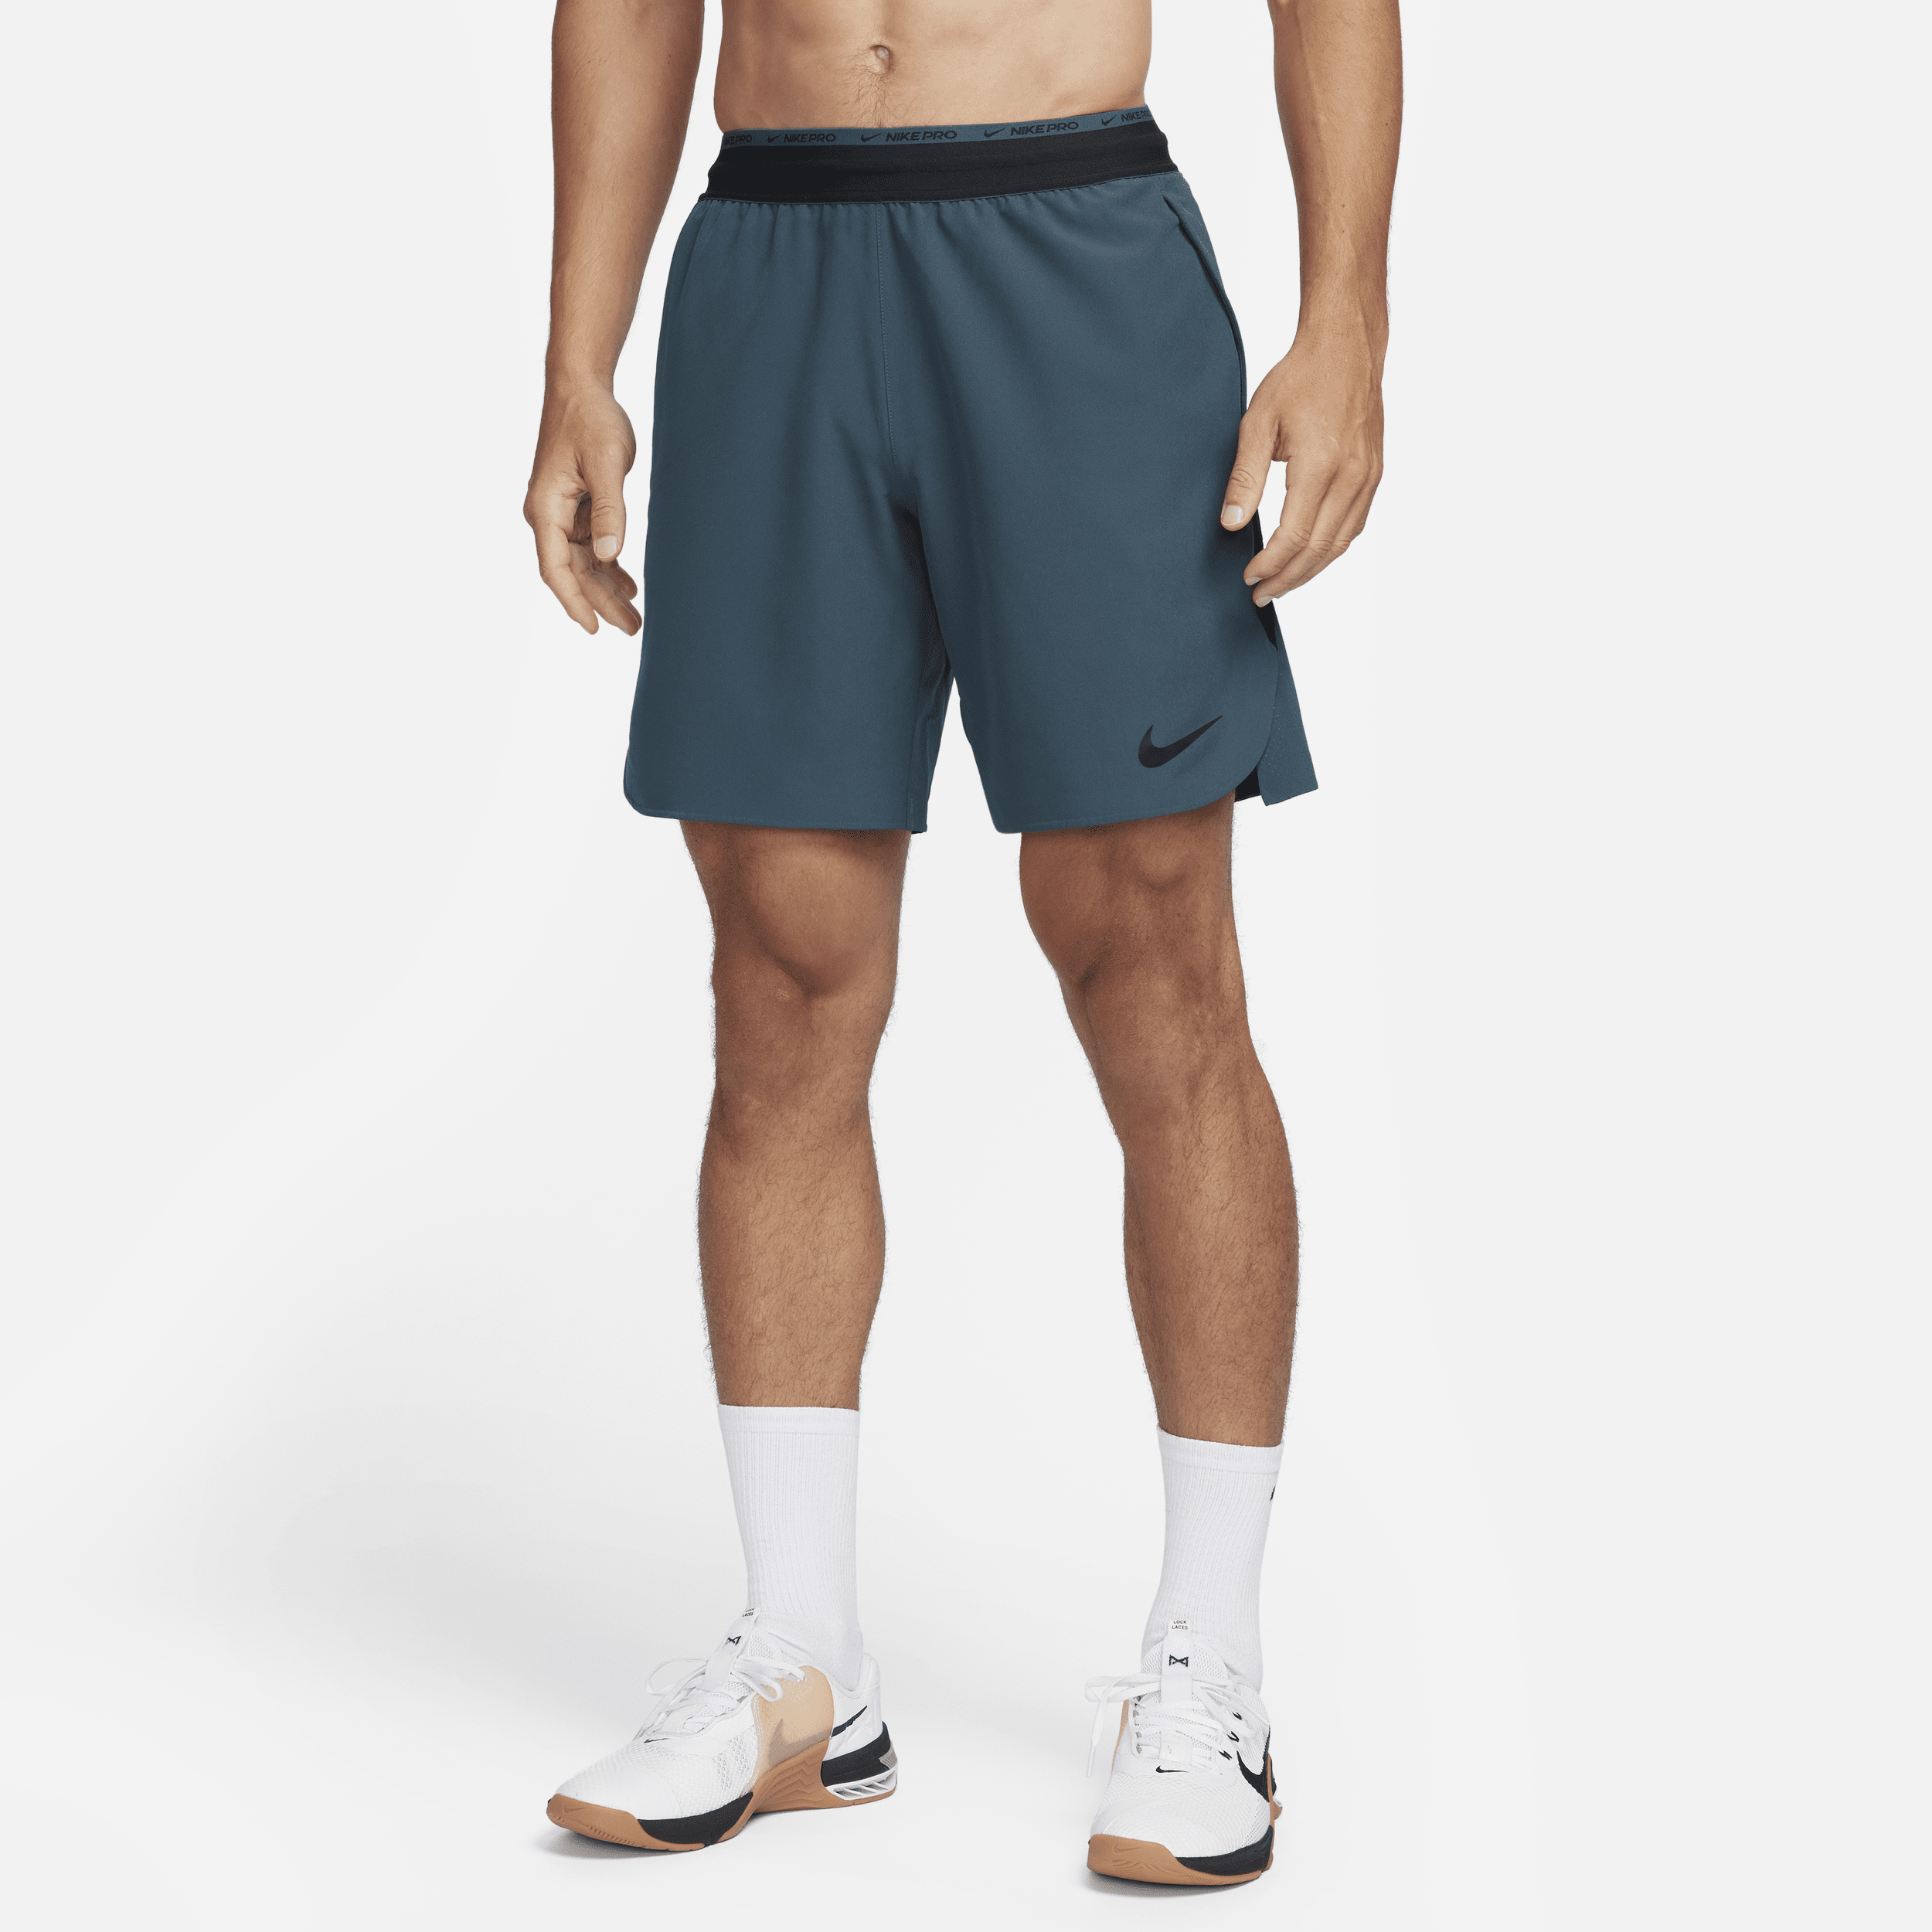 Shorts da training non foderati 20 cm Nike Dri-FIT Flex Rep Pro Collection – Uomo - Verde